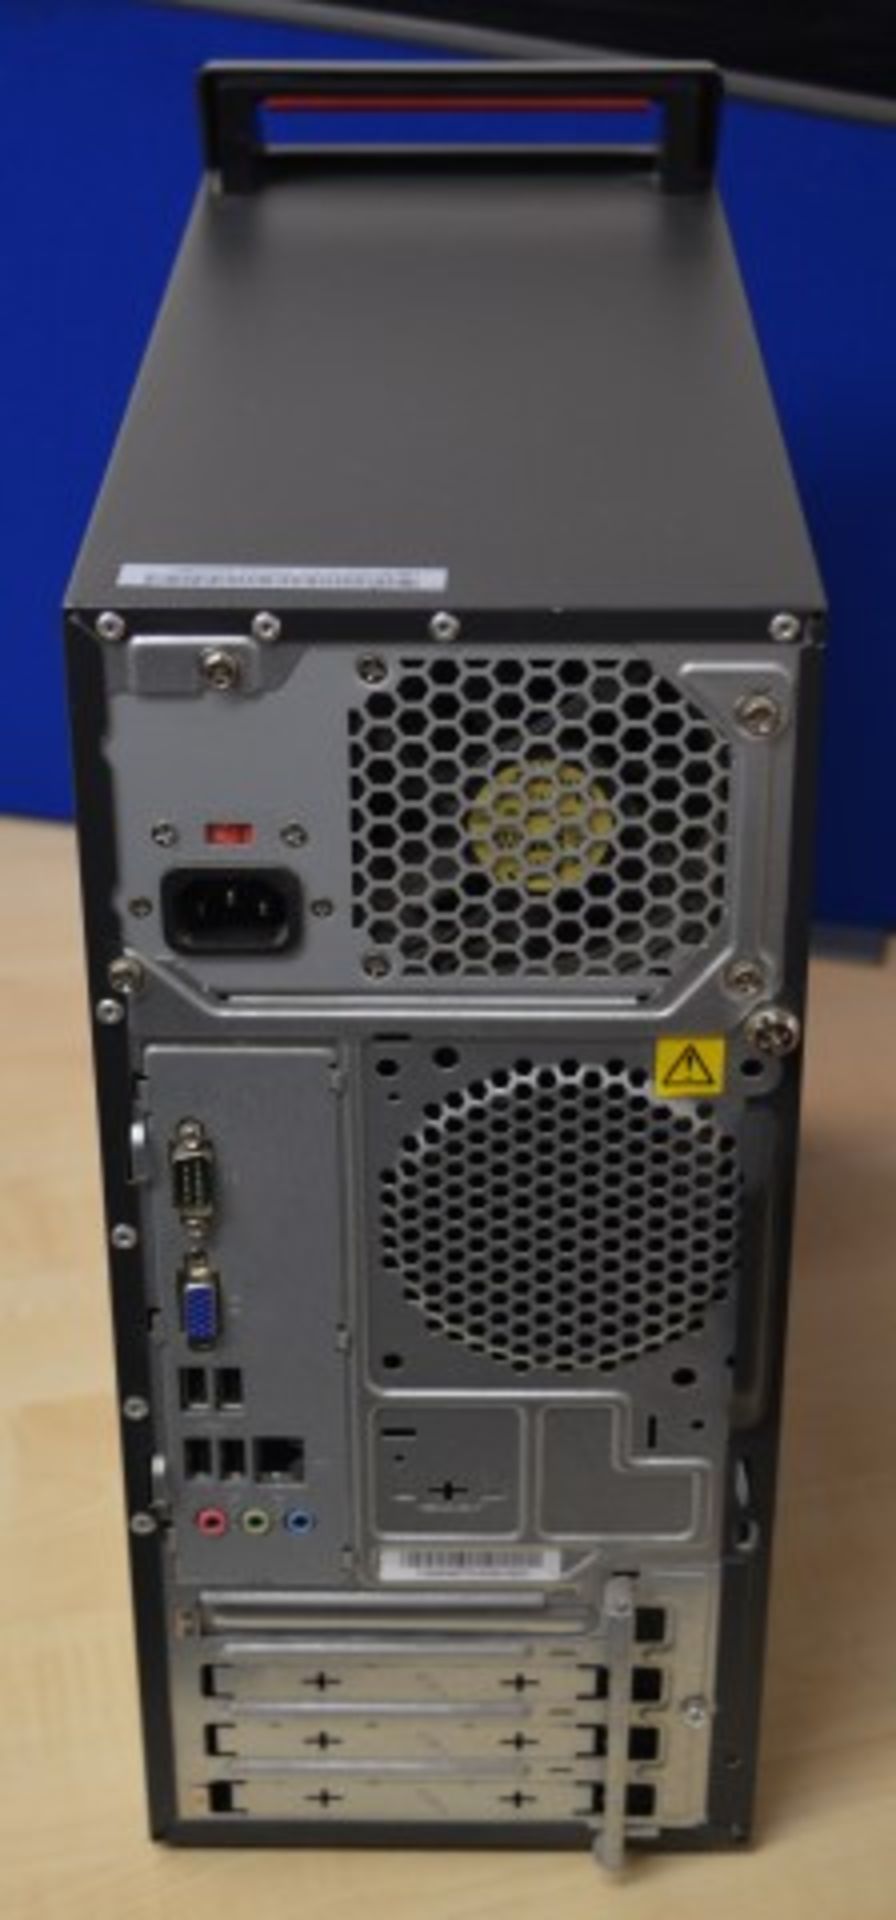 1 x Lenovo Thinkcentre A70 Desktop Computer - Intel Core 2 Duo E7500 2.93ghz Processor - 6gb DDR3 - Image 3 of 3